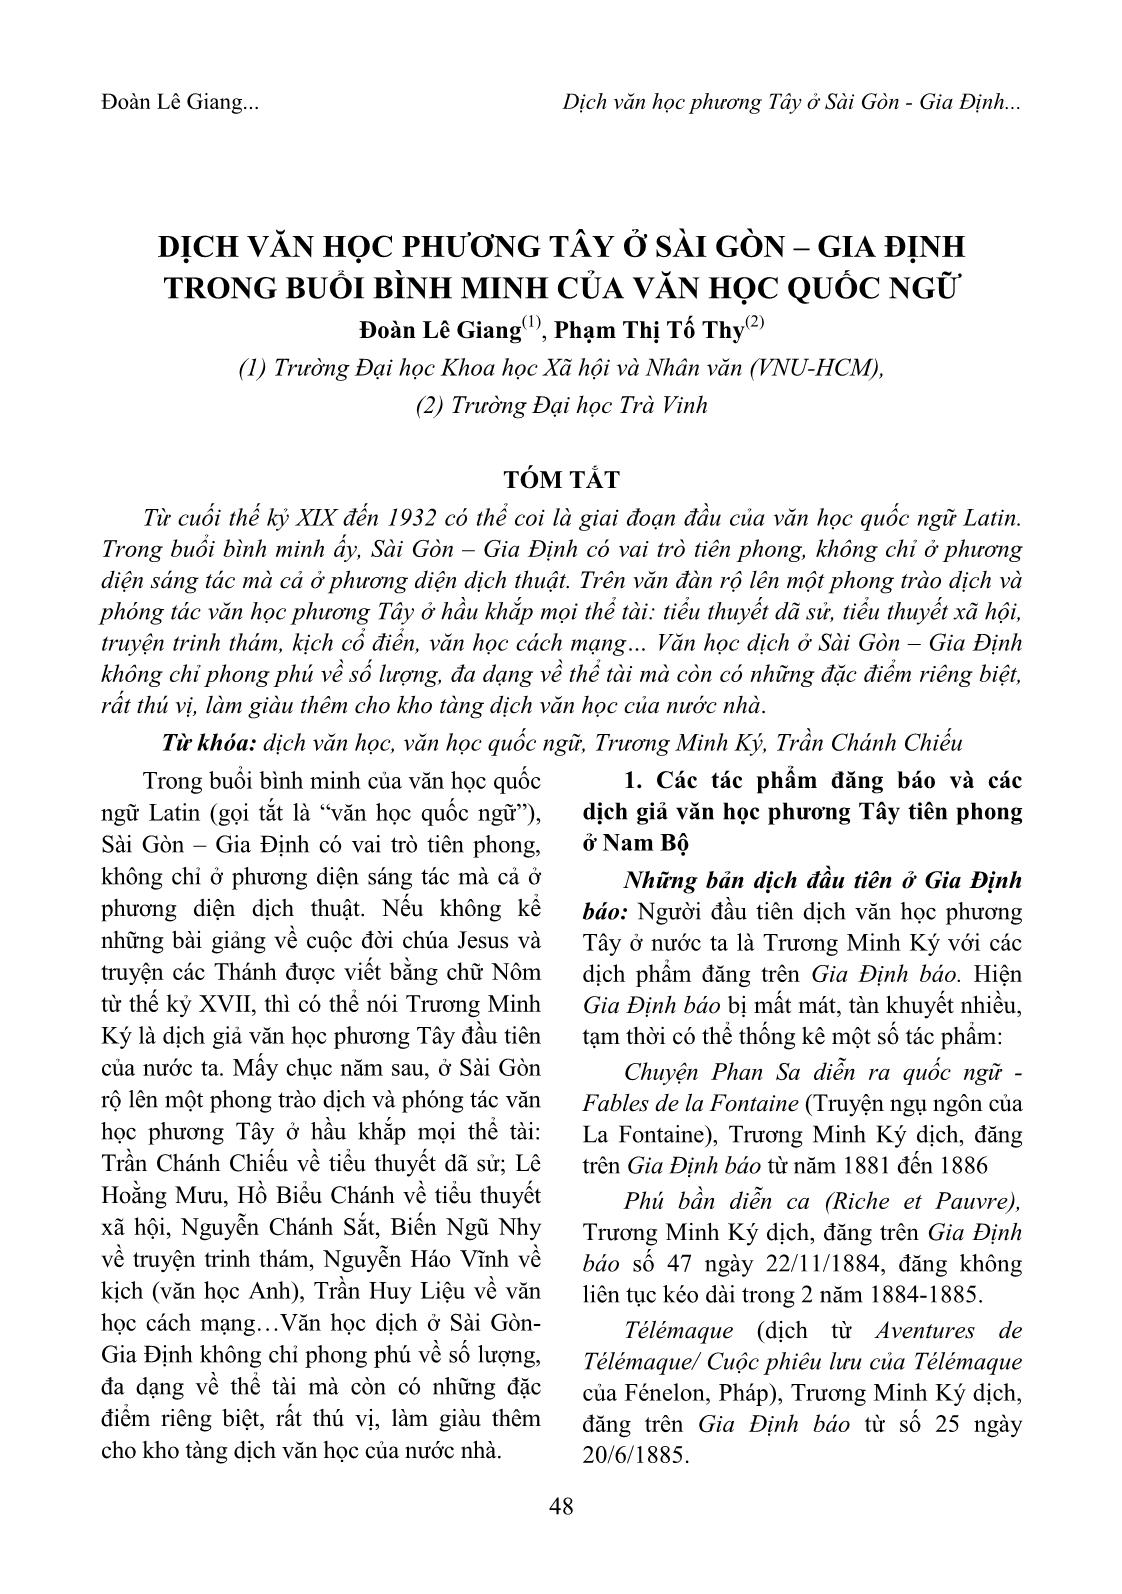 Dịch văn học phương Tây ở Sài Gòn – gia định trong buổi bình minh của văn học quốc ngữ trang 1